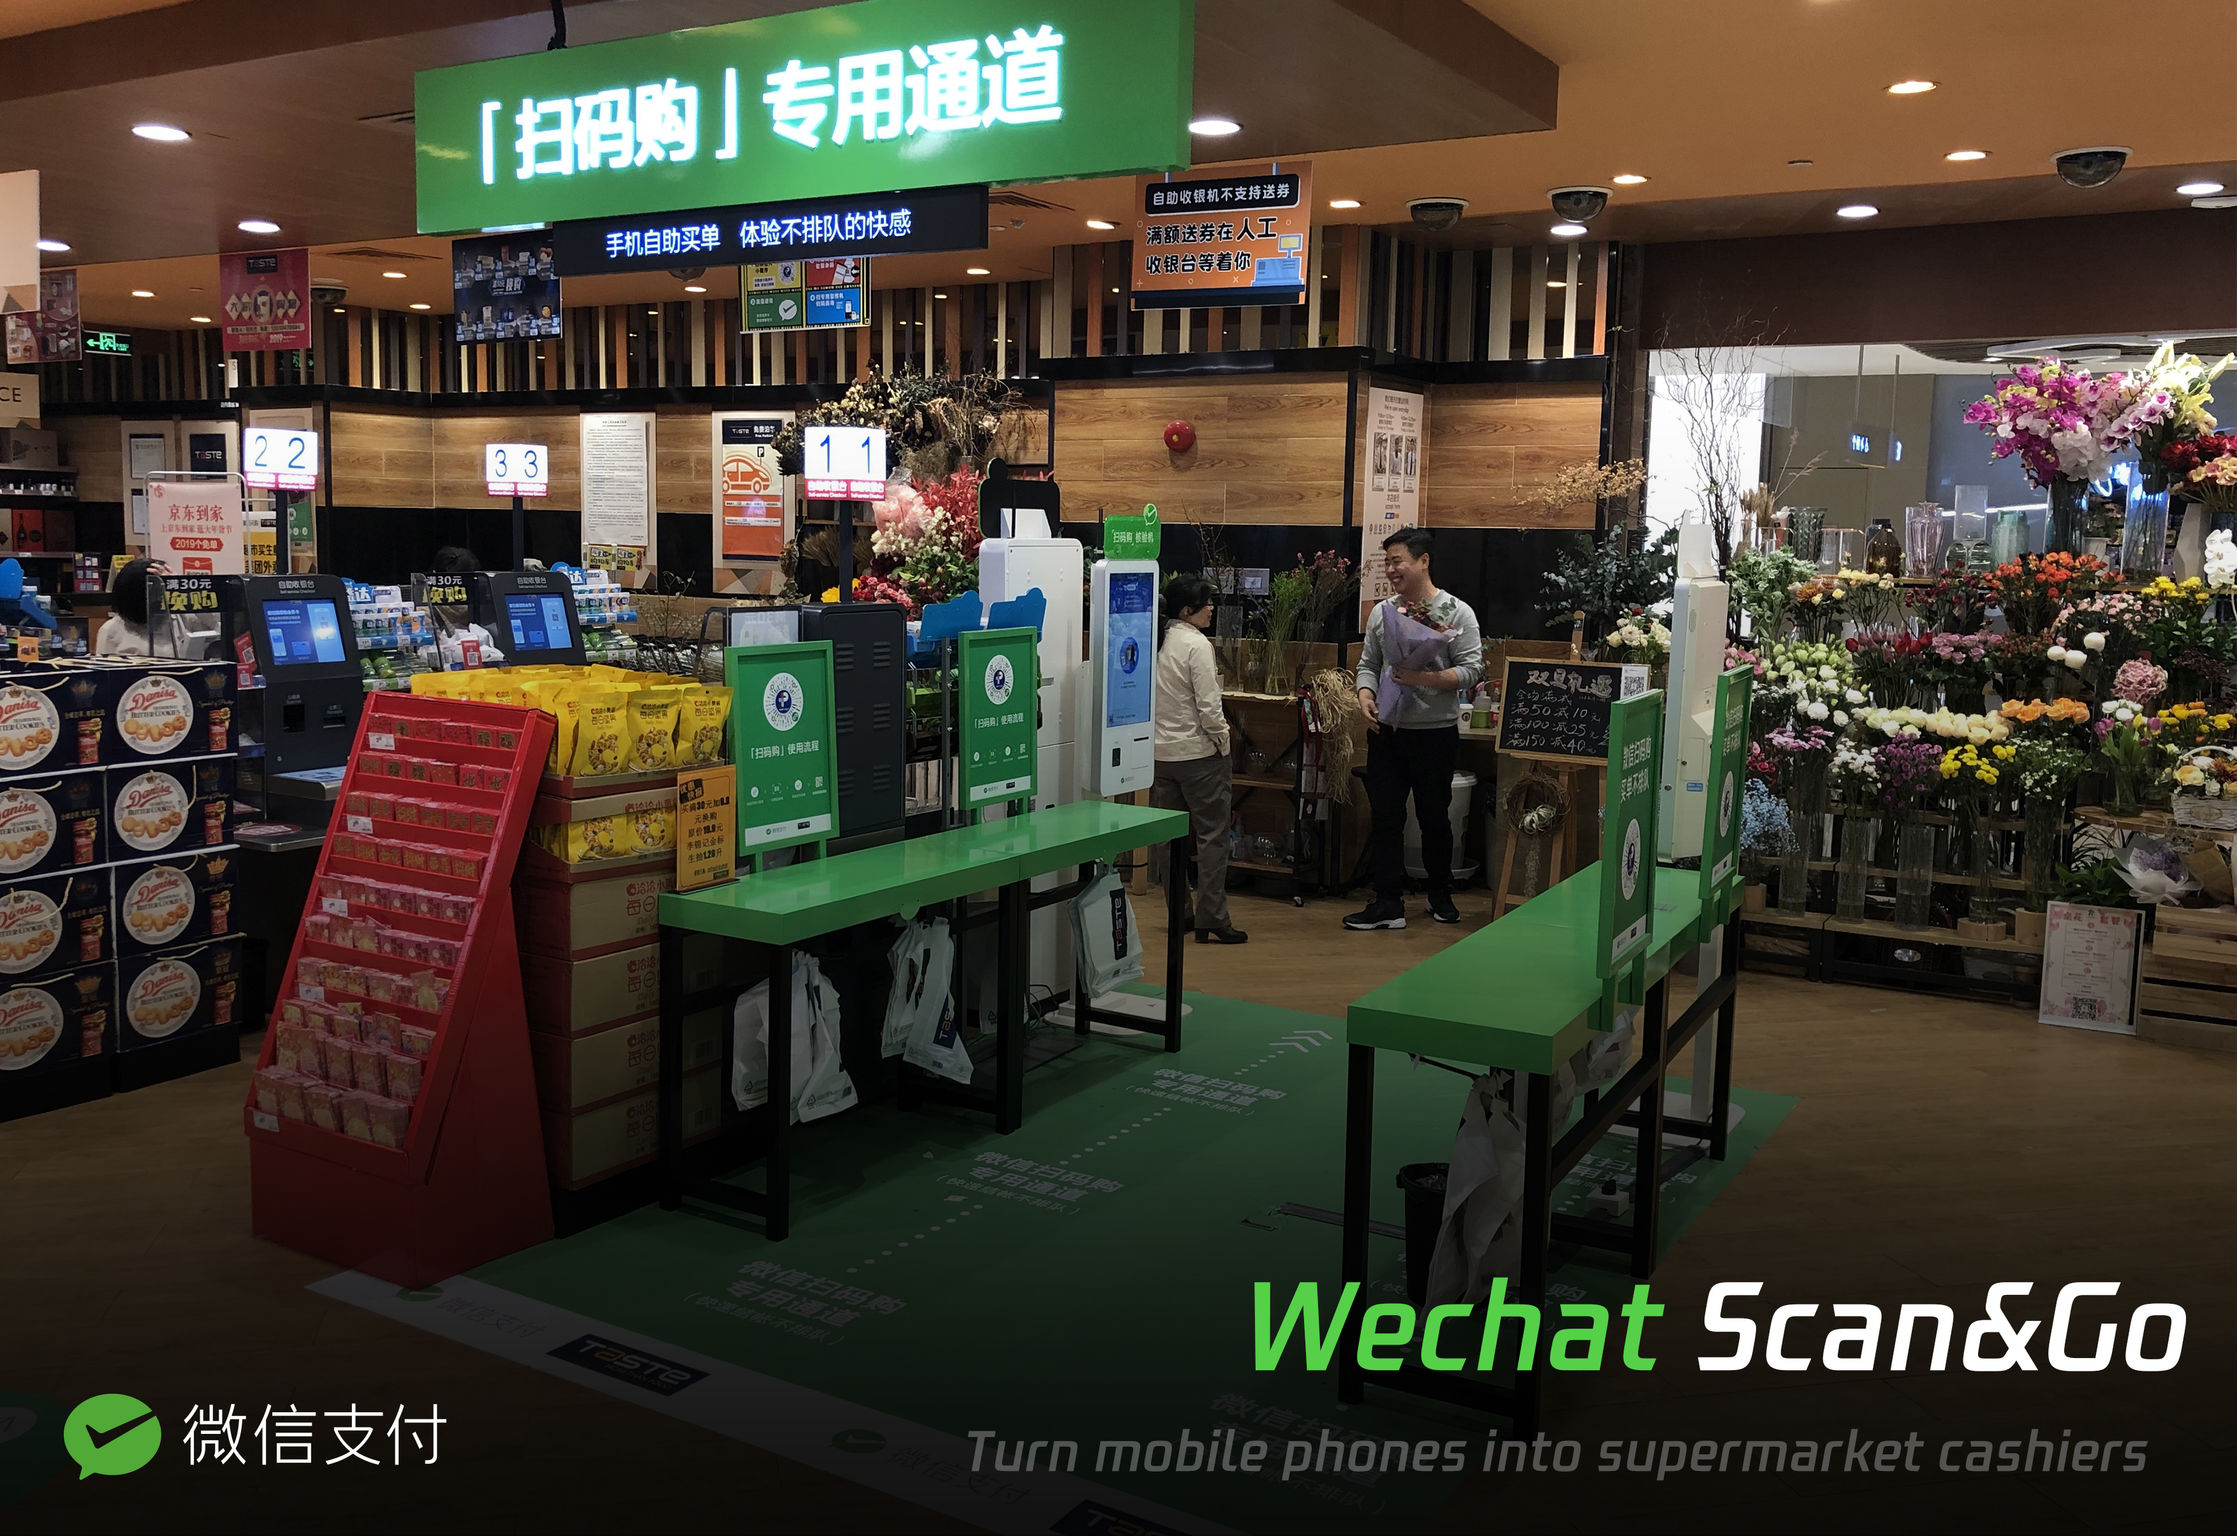 WeChat Scan&Go